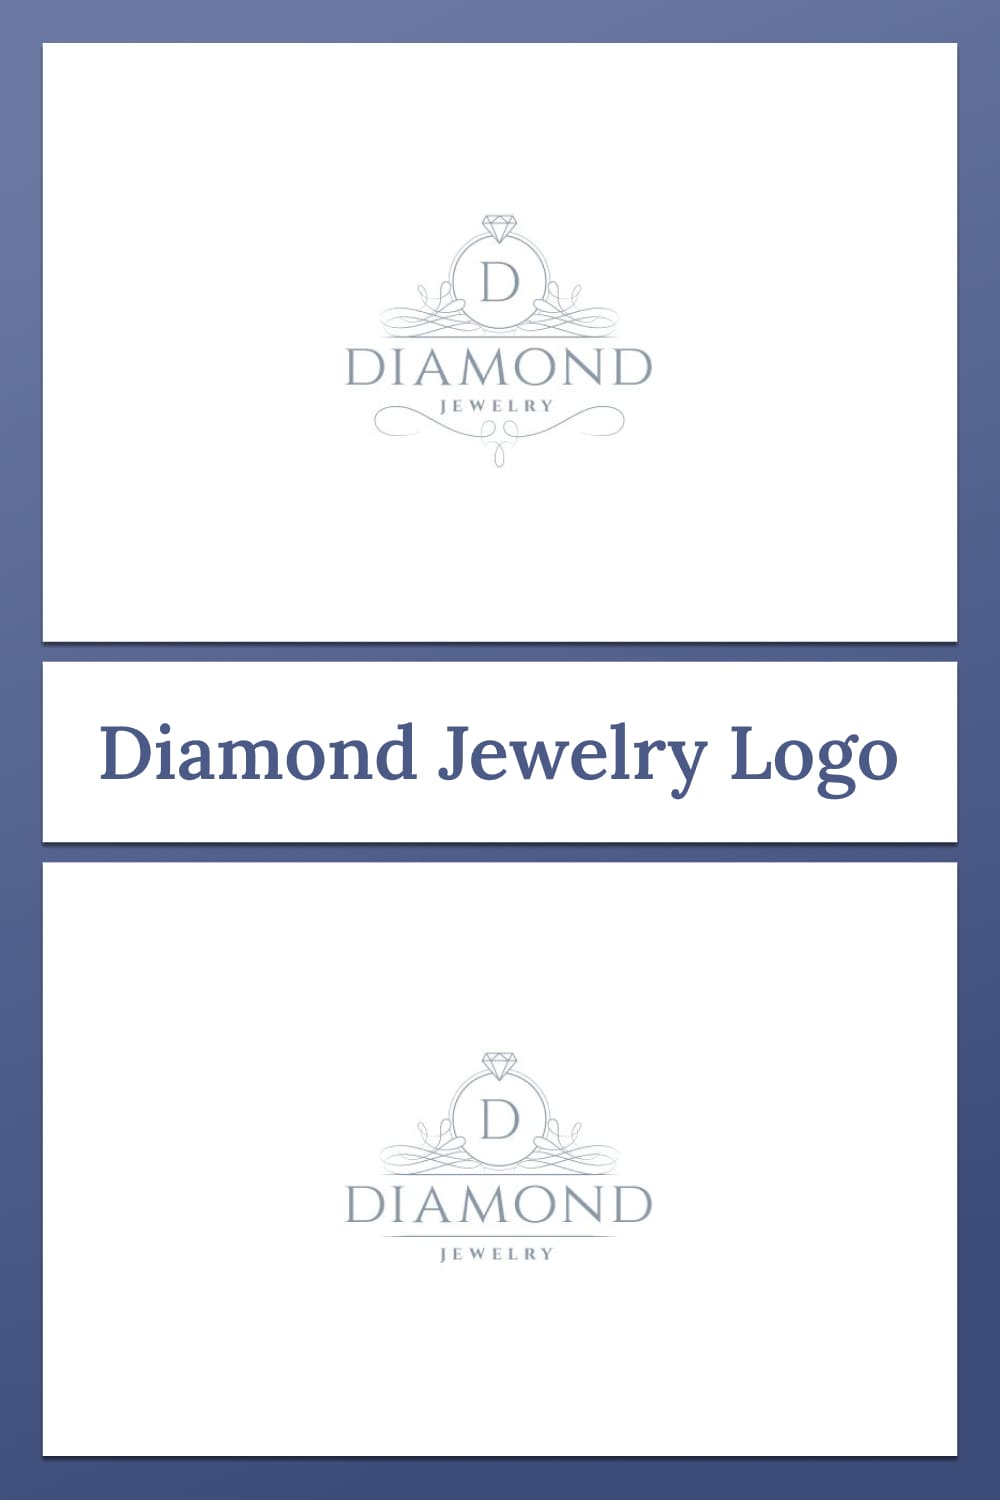 diamond jewelry logo for any kind of jewelry.